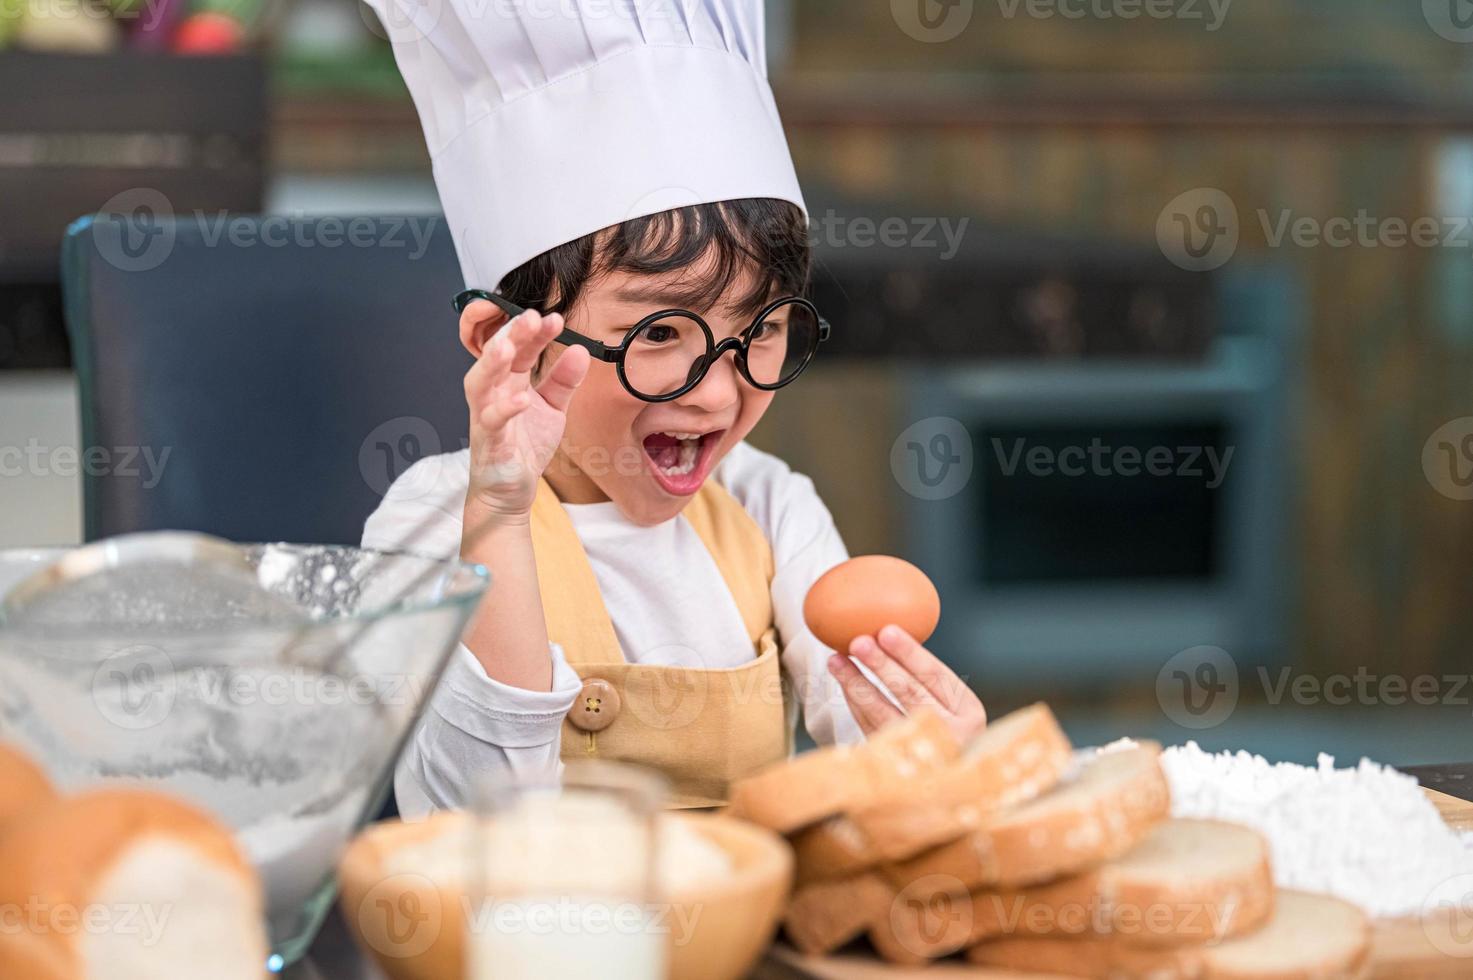 retrato lindo niño feliz asiático sorprendido e interesado en cocinar divertido en la cocina de casa. estilos de vida de personas y familia. concepto de ingredientes y comida casera. hornear galletas y pastel de navidad foto